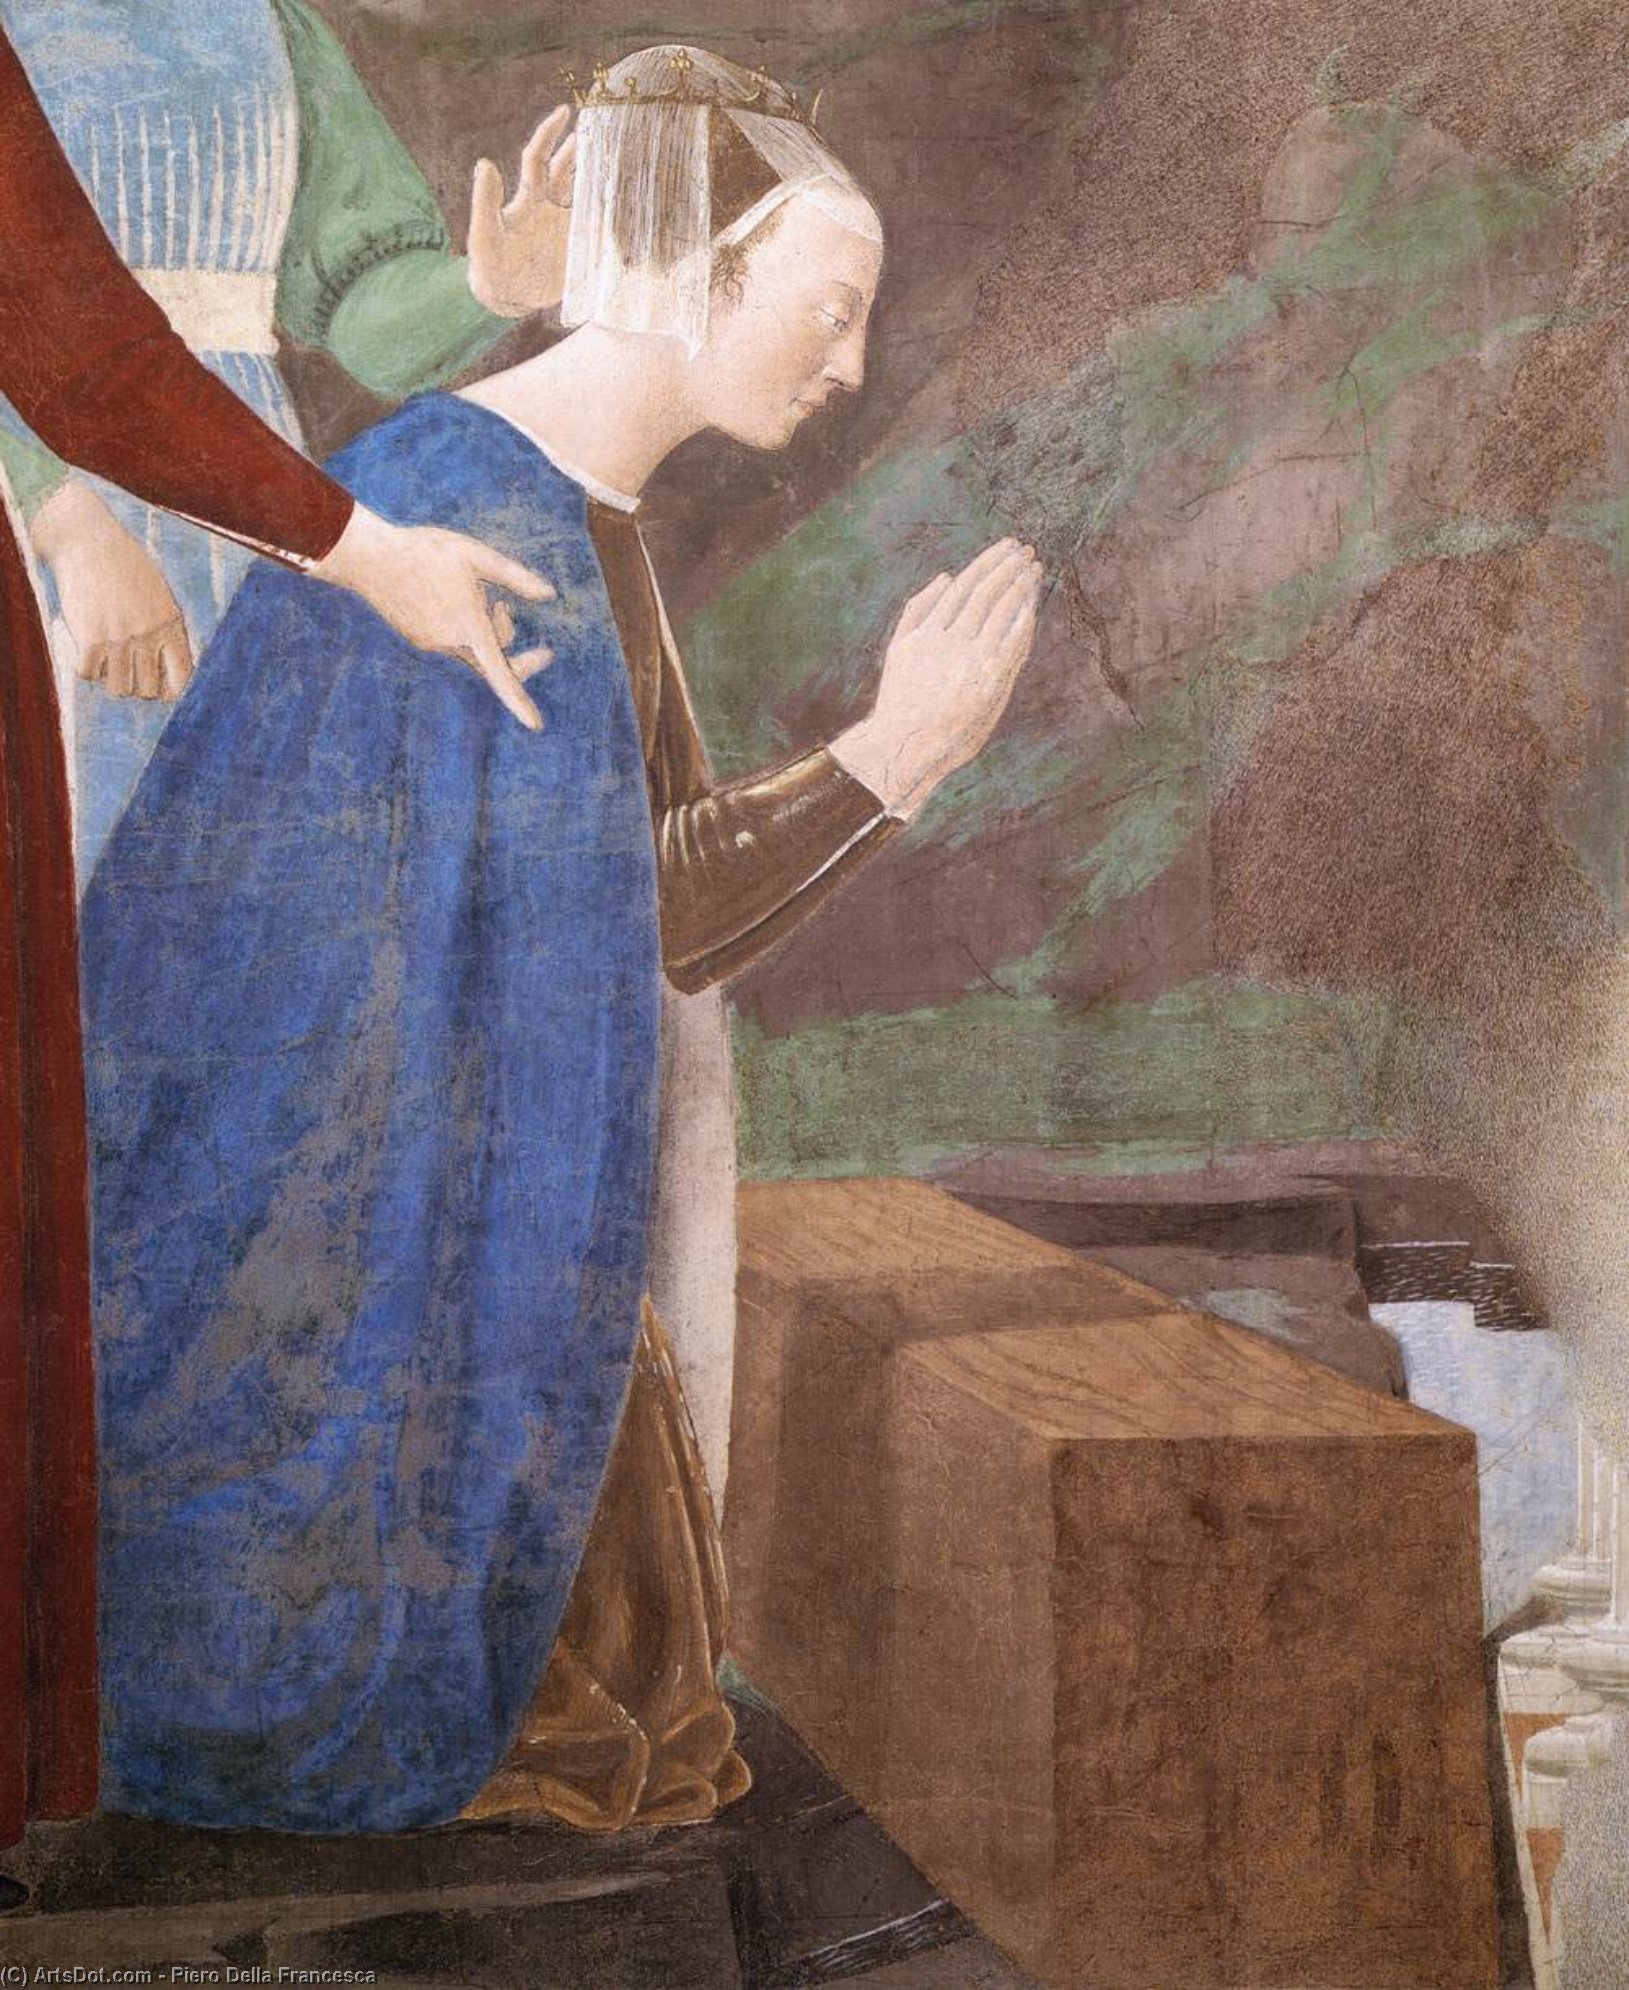 WikiOO.org - אנציקלופדיה לאמנויות יפות - ציור, יצירות אמנות Piero Della Francesca - 2a. Procession of the Queen of Sheba (detail) (10)